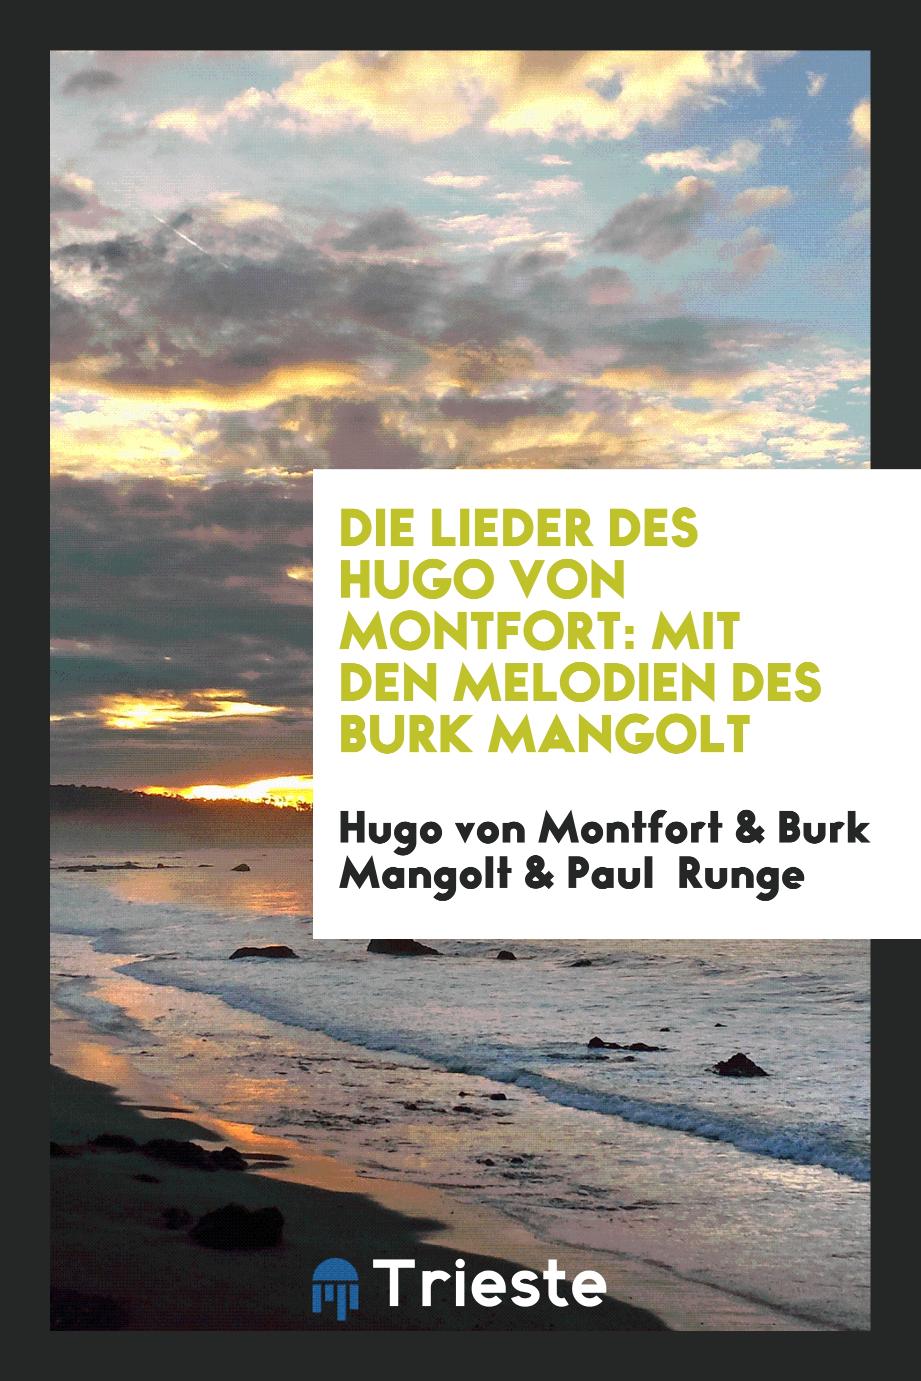 Hugo von Montfort, Burk Mangolt, Paul  Runge - Die Lieder des Hugo von Montfort: Mit den Melodien des Burk Mangolt